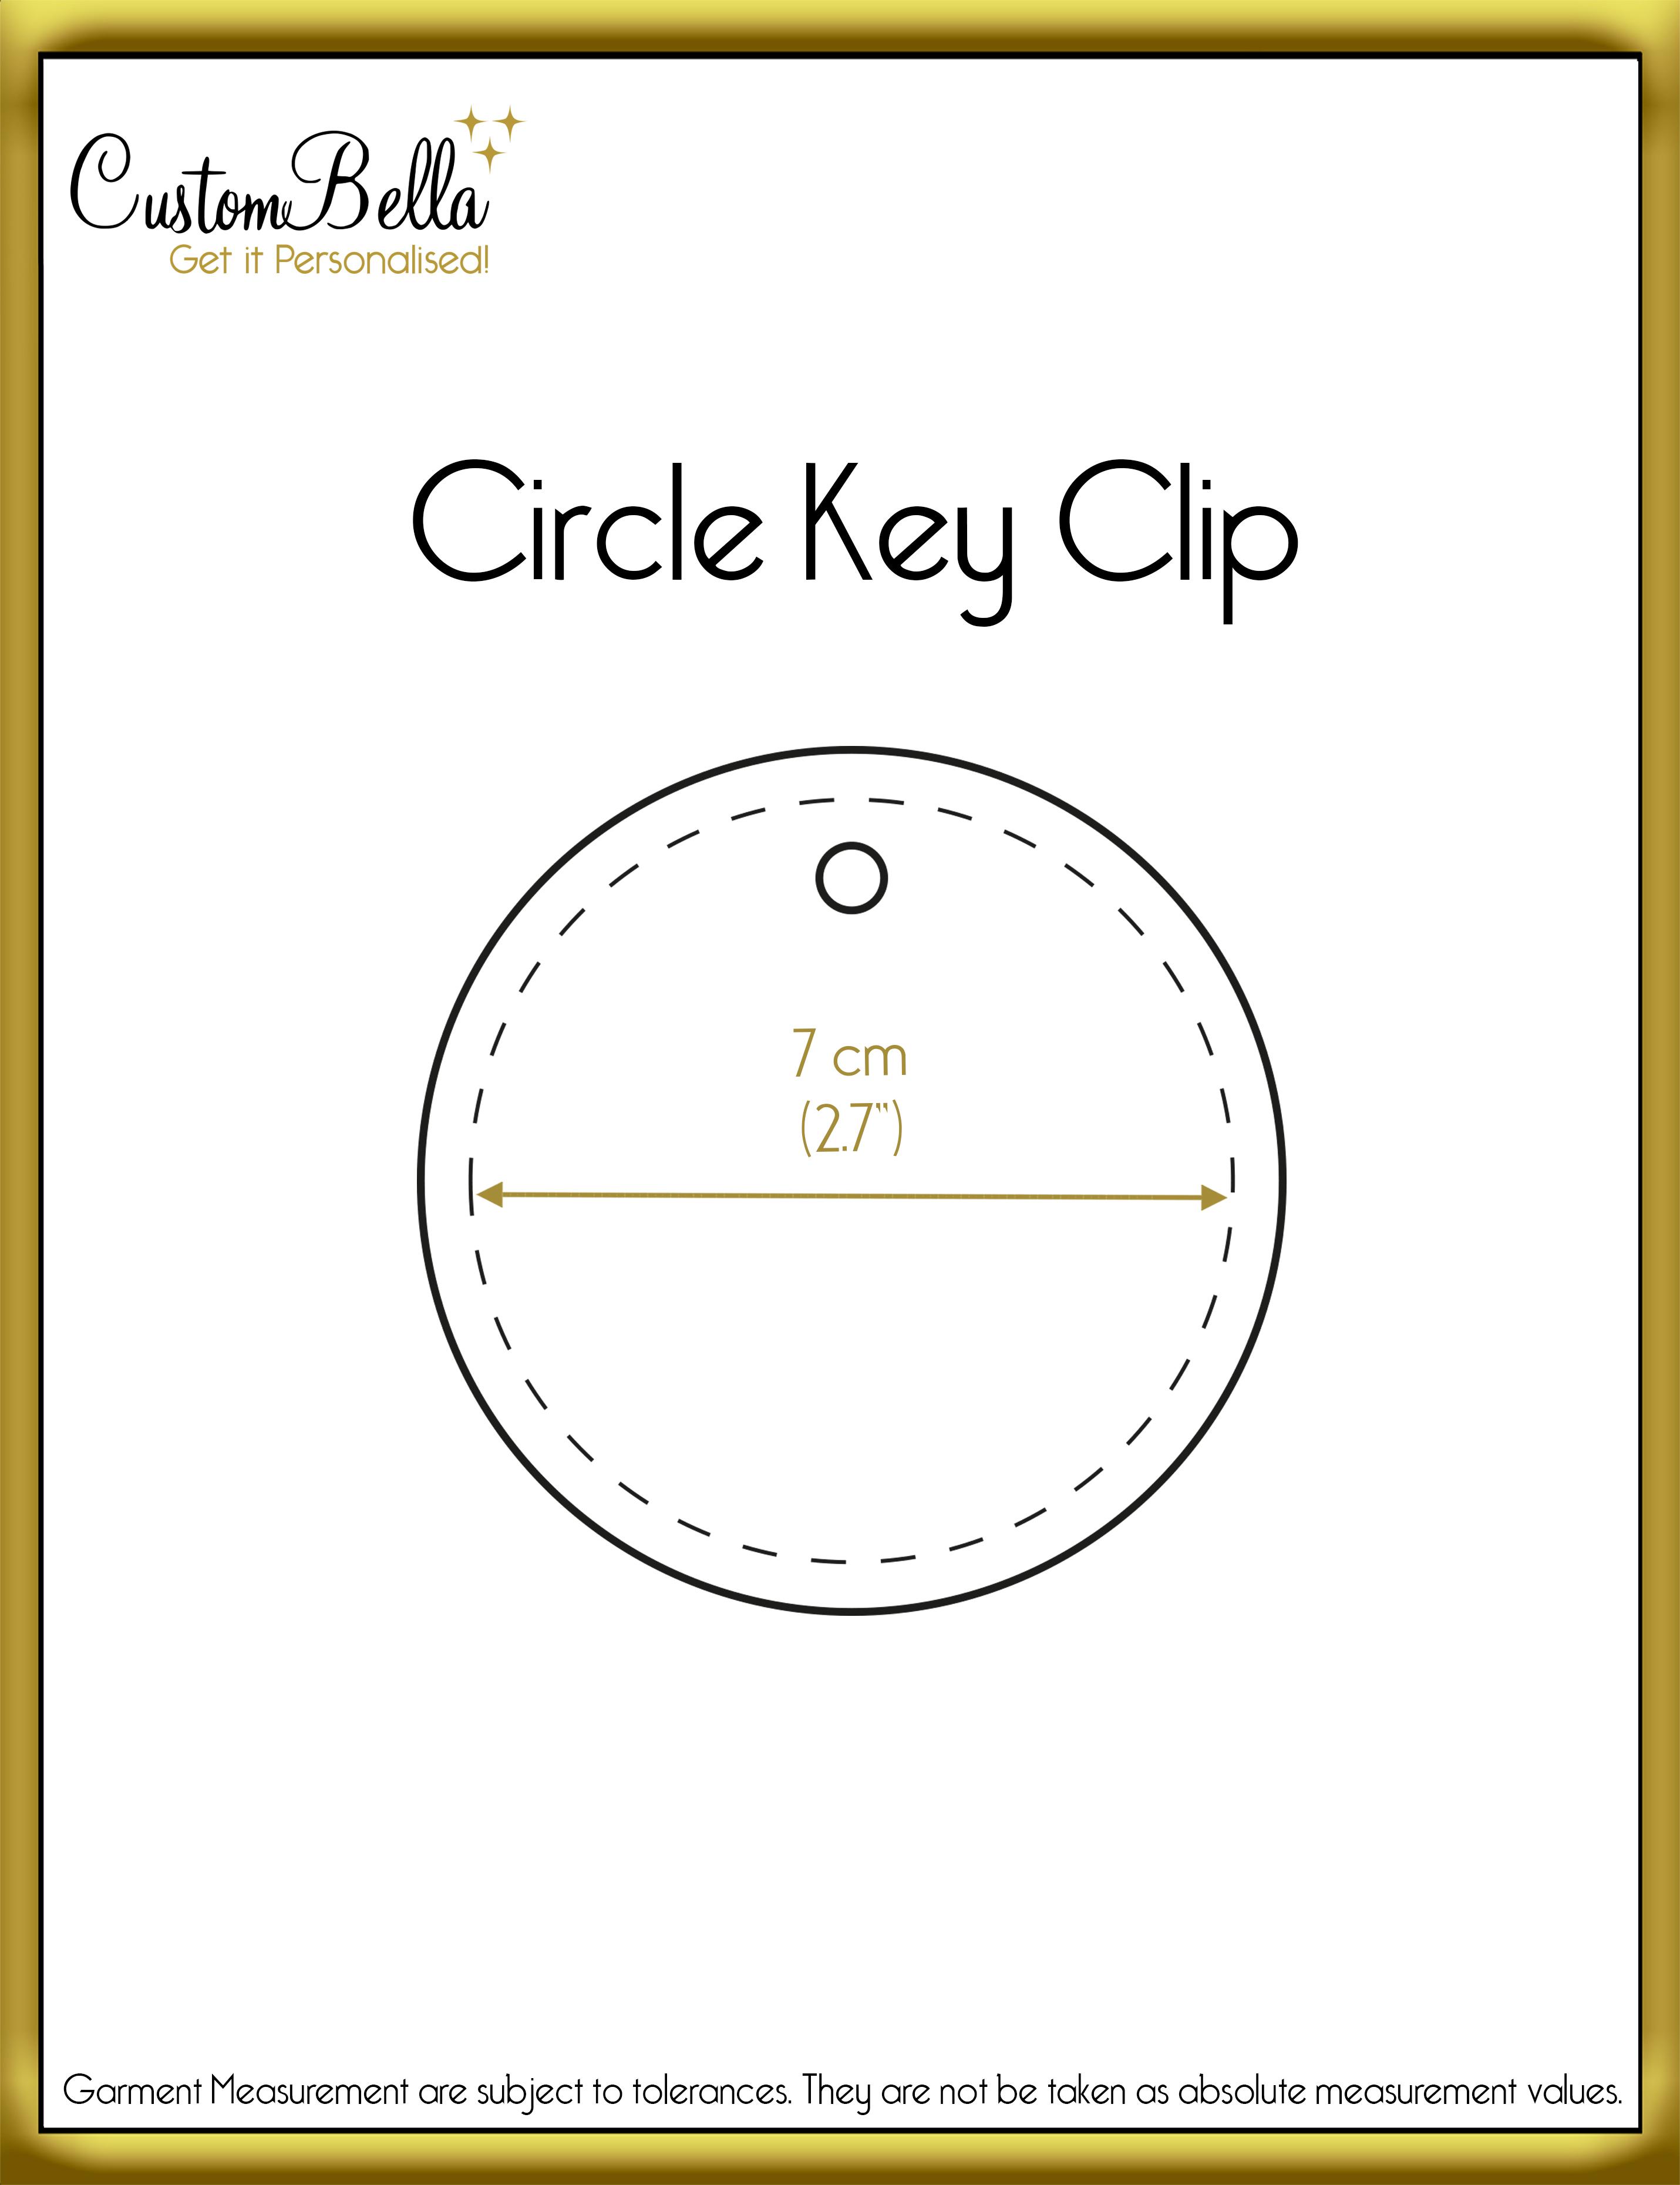 Printed Circular Key ring dimensions